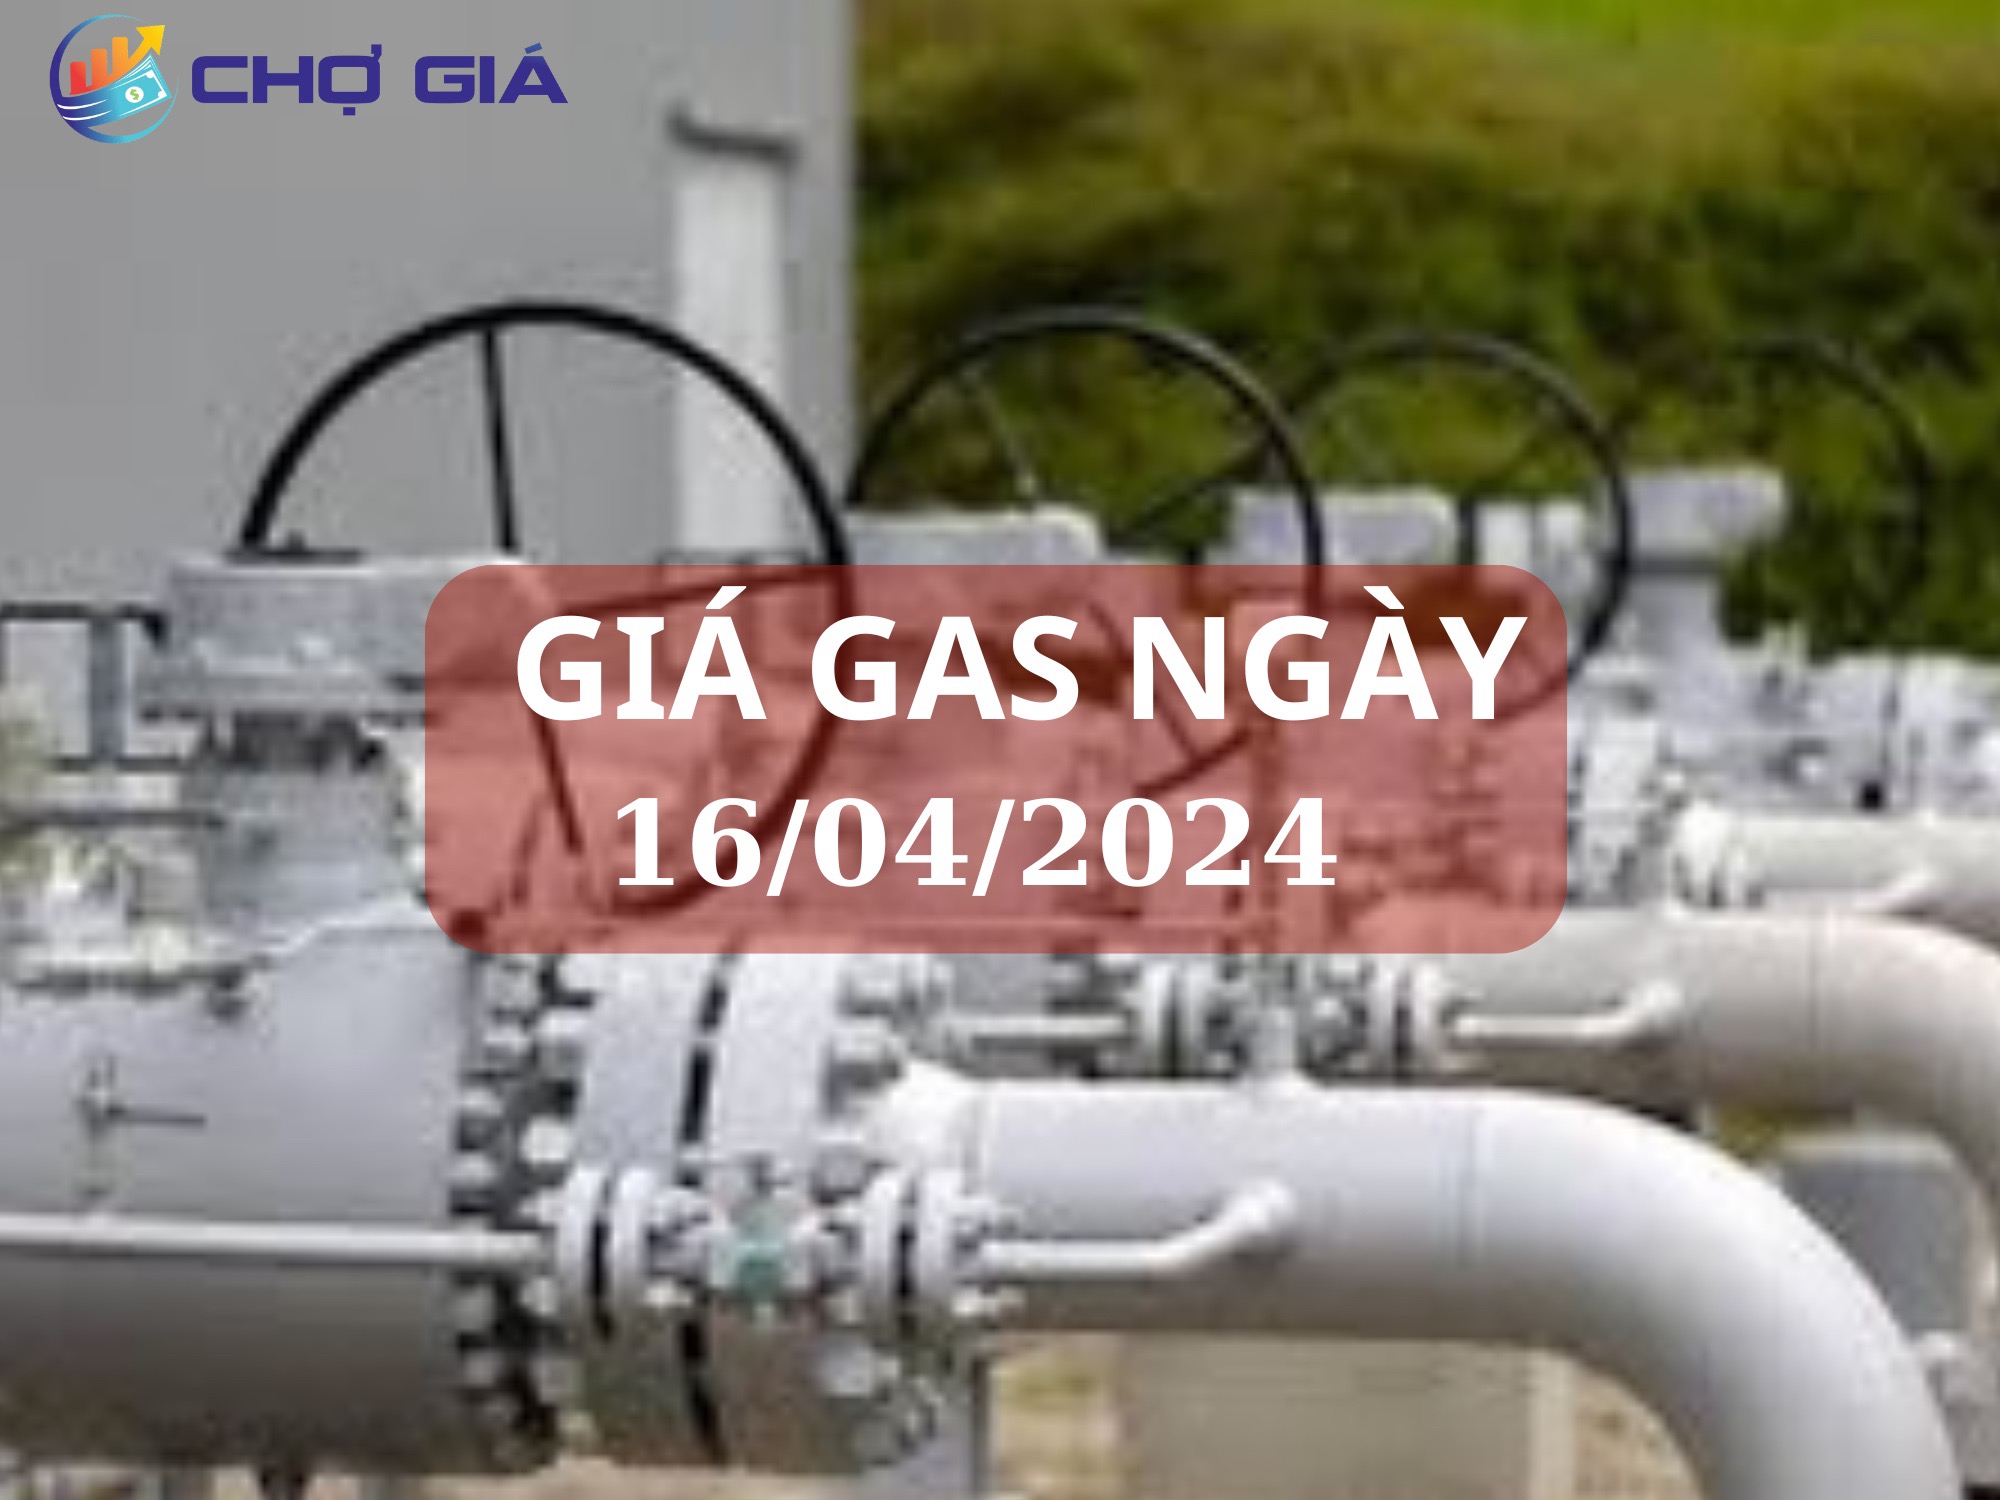 gia gas nagy 16 04 2024